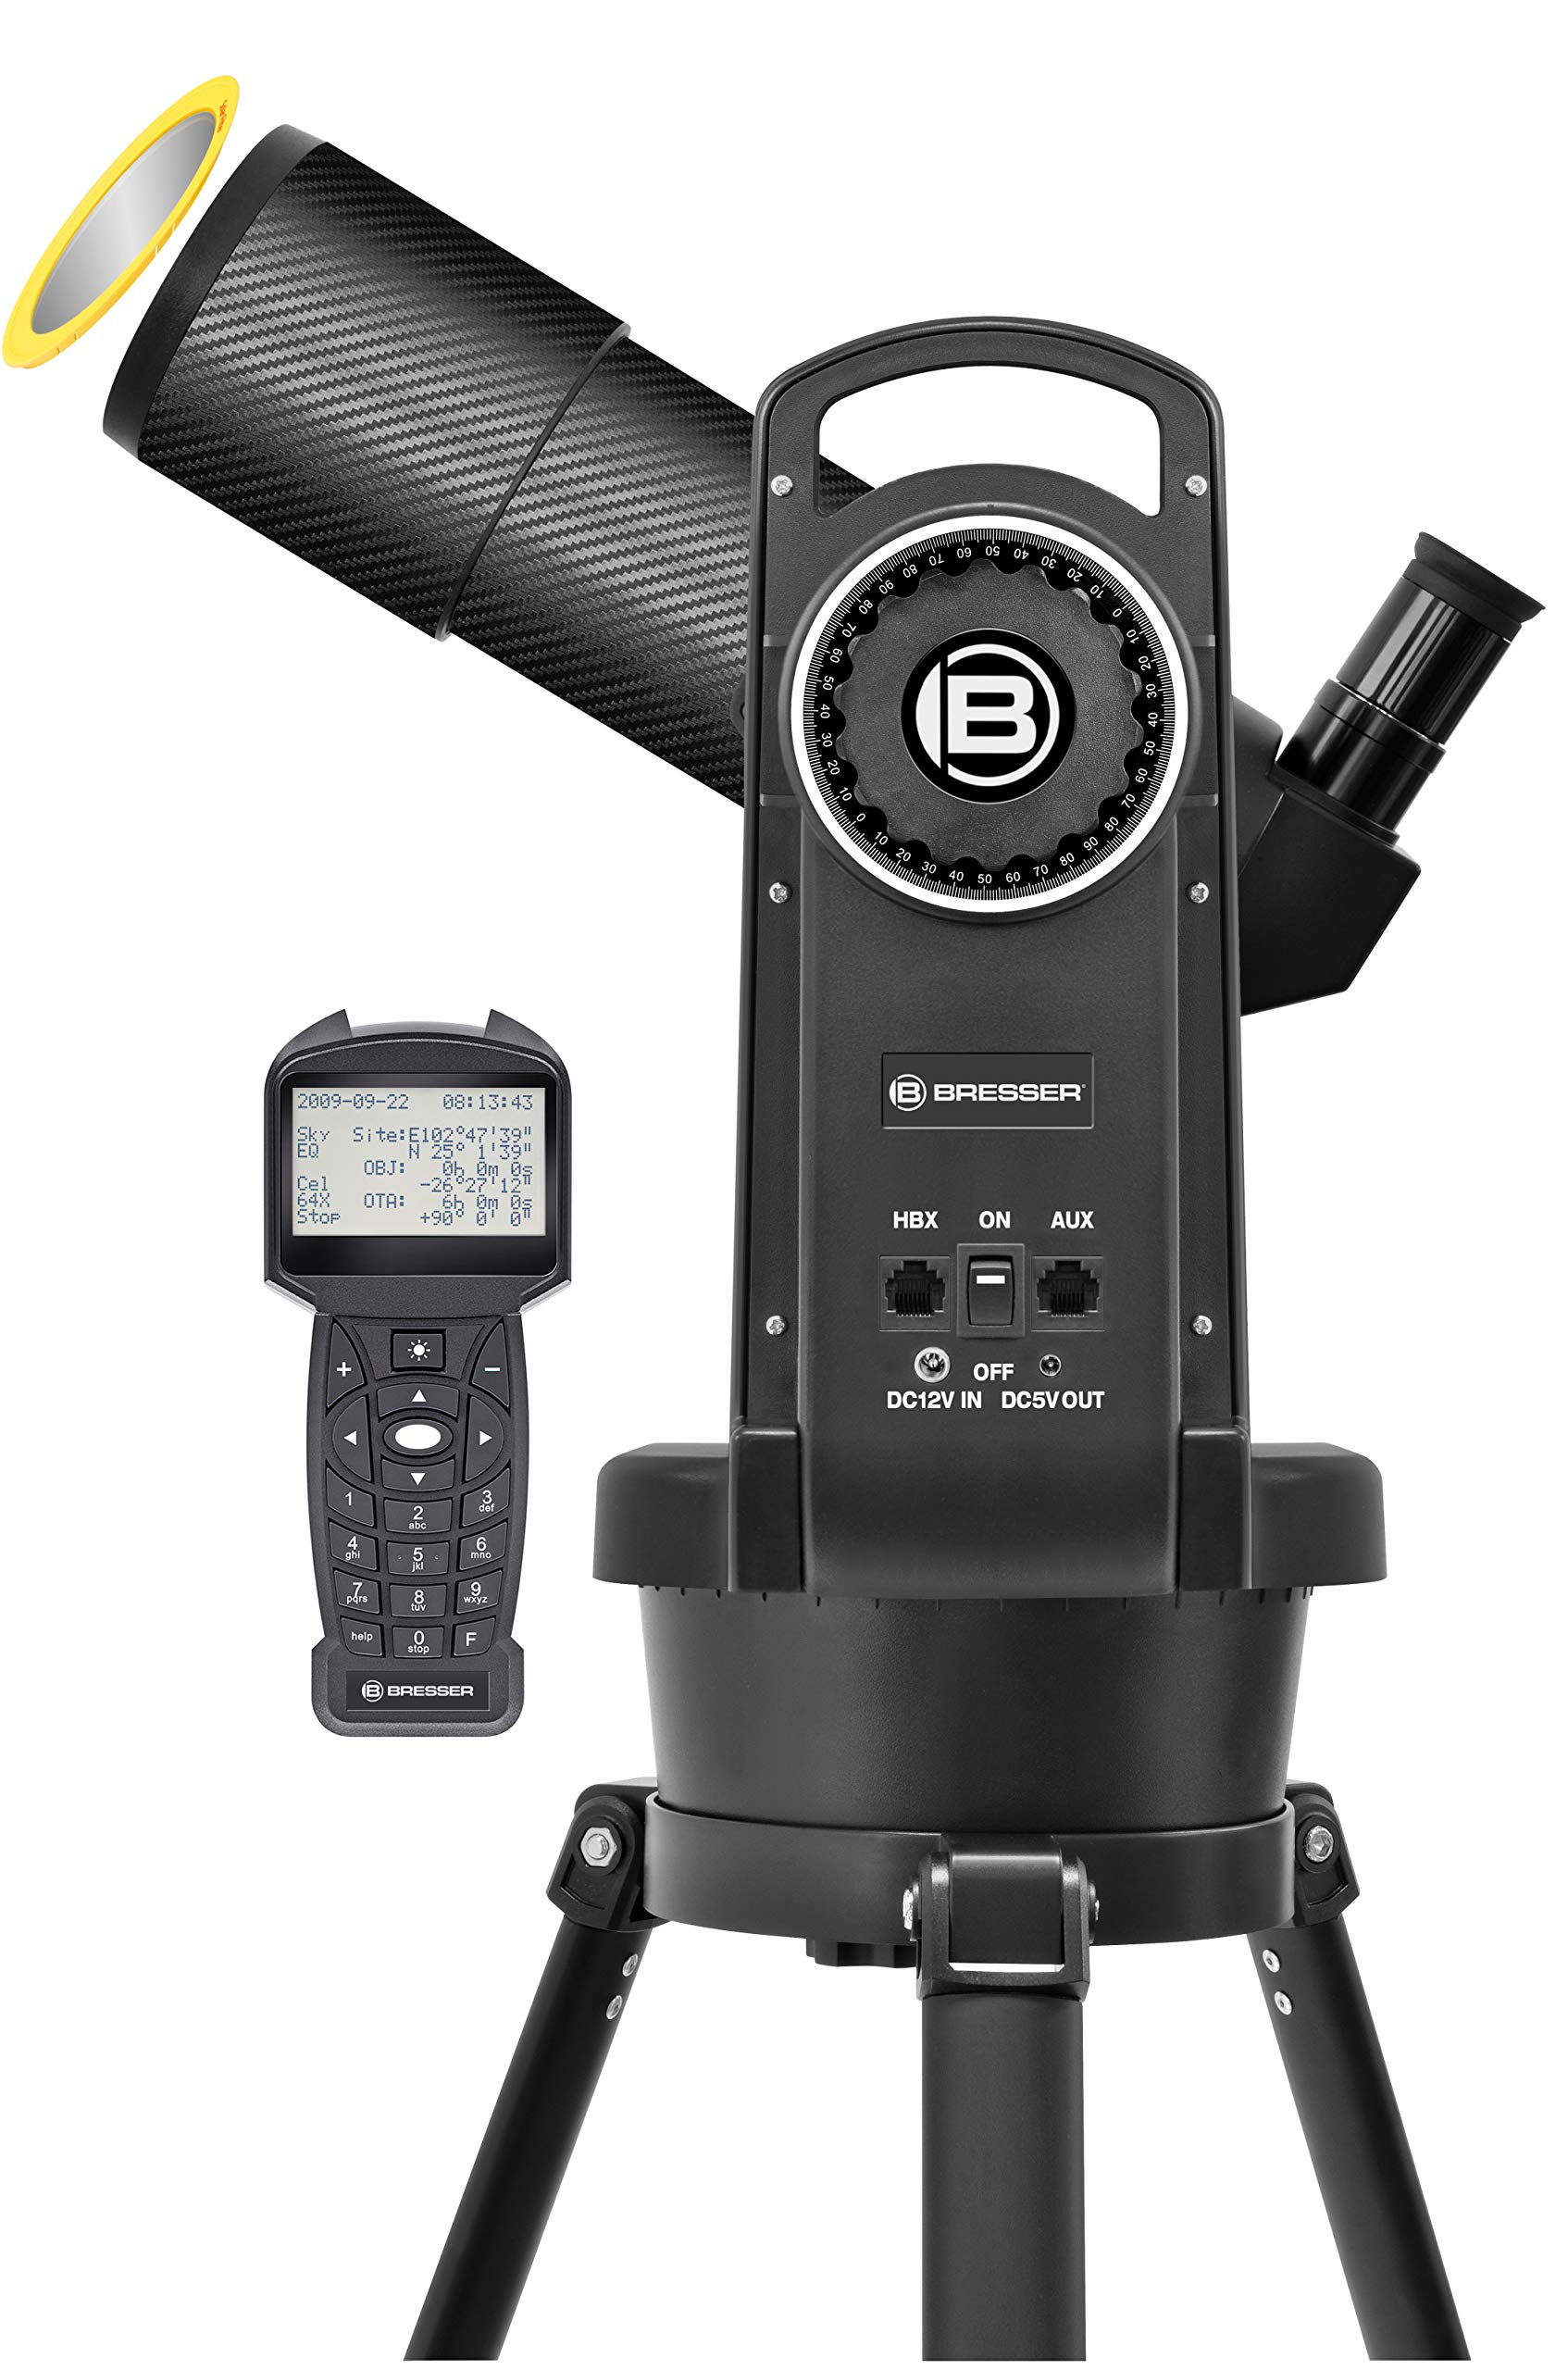 Bresser Refraktor Teleskop 80/400 automatisches Goto Teleskop mit Computersteuerung über Handbox und hochwertigem Objektiv-Sonnenfilter, inklusive Stativ und umfangreichem Zubehör